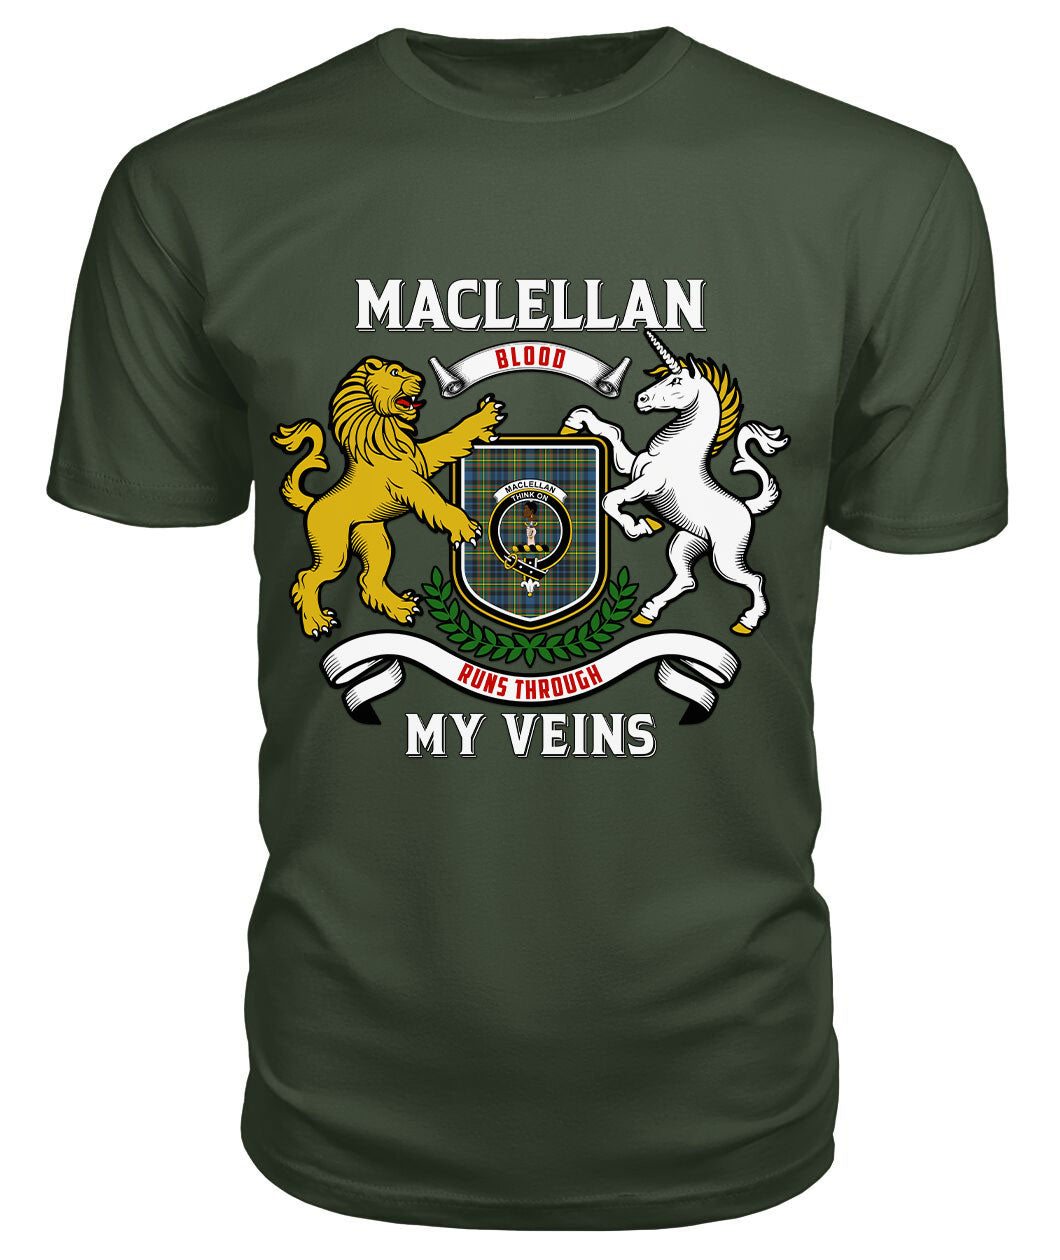 MacLellan Ancient Tartan Crest 2D T-shirt - Blood Runs Through My Veins Style